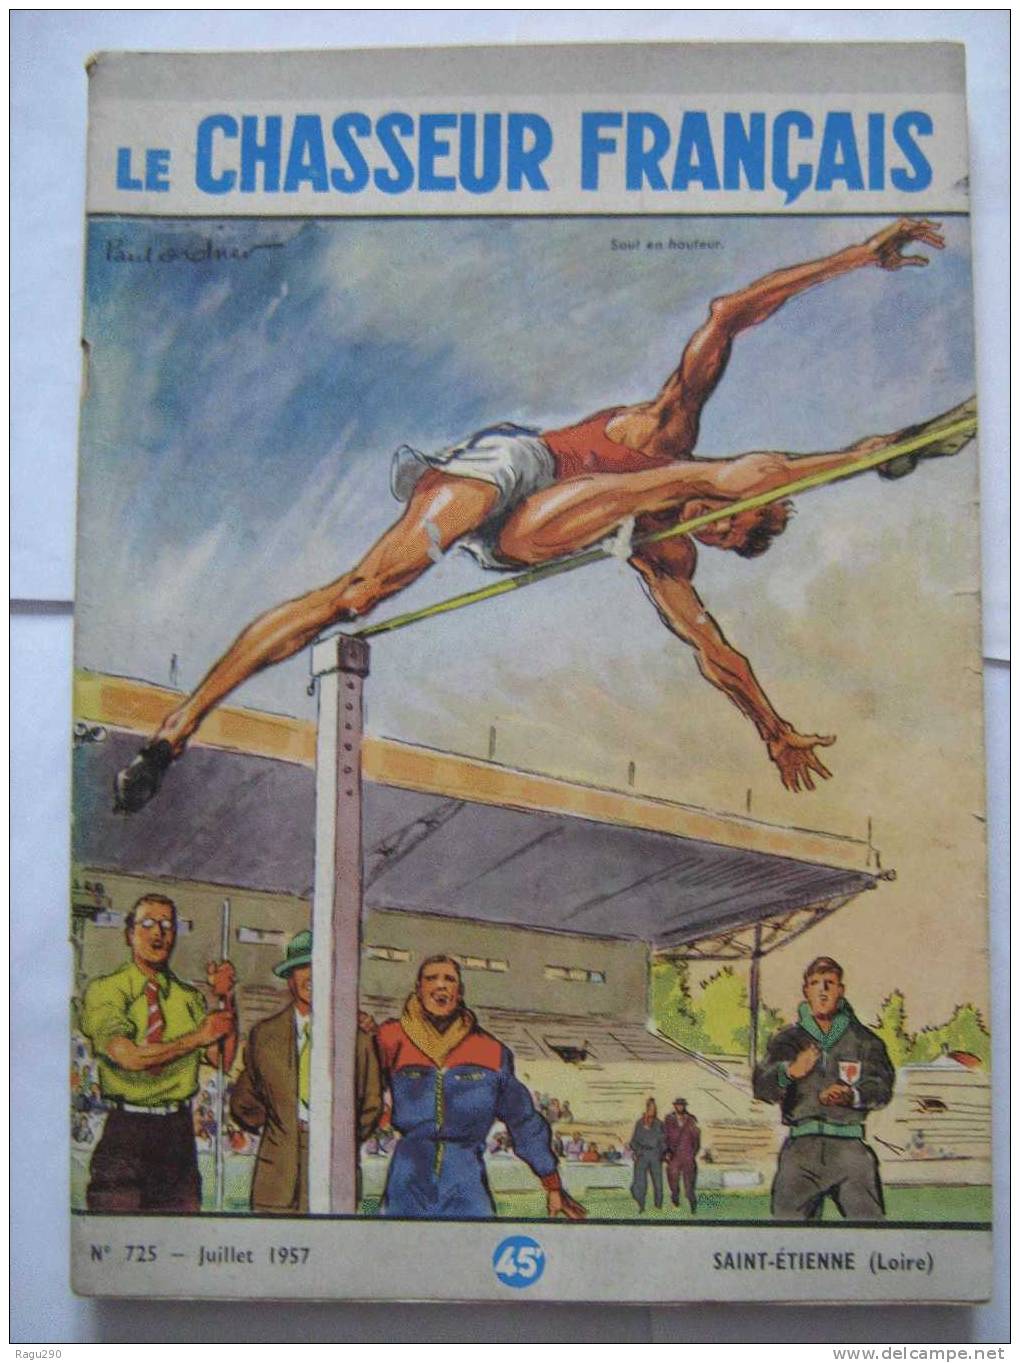 LE CHASSEUR FRANCAIS N° 725 Illustré Par  PAUL ORDNER -- Saut En Hauteur  -- Juillet 1957 - Jagen En Vissen